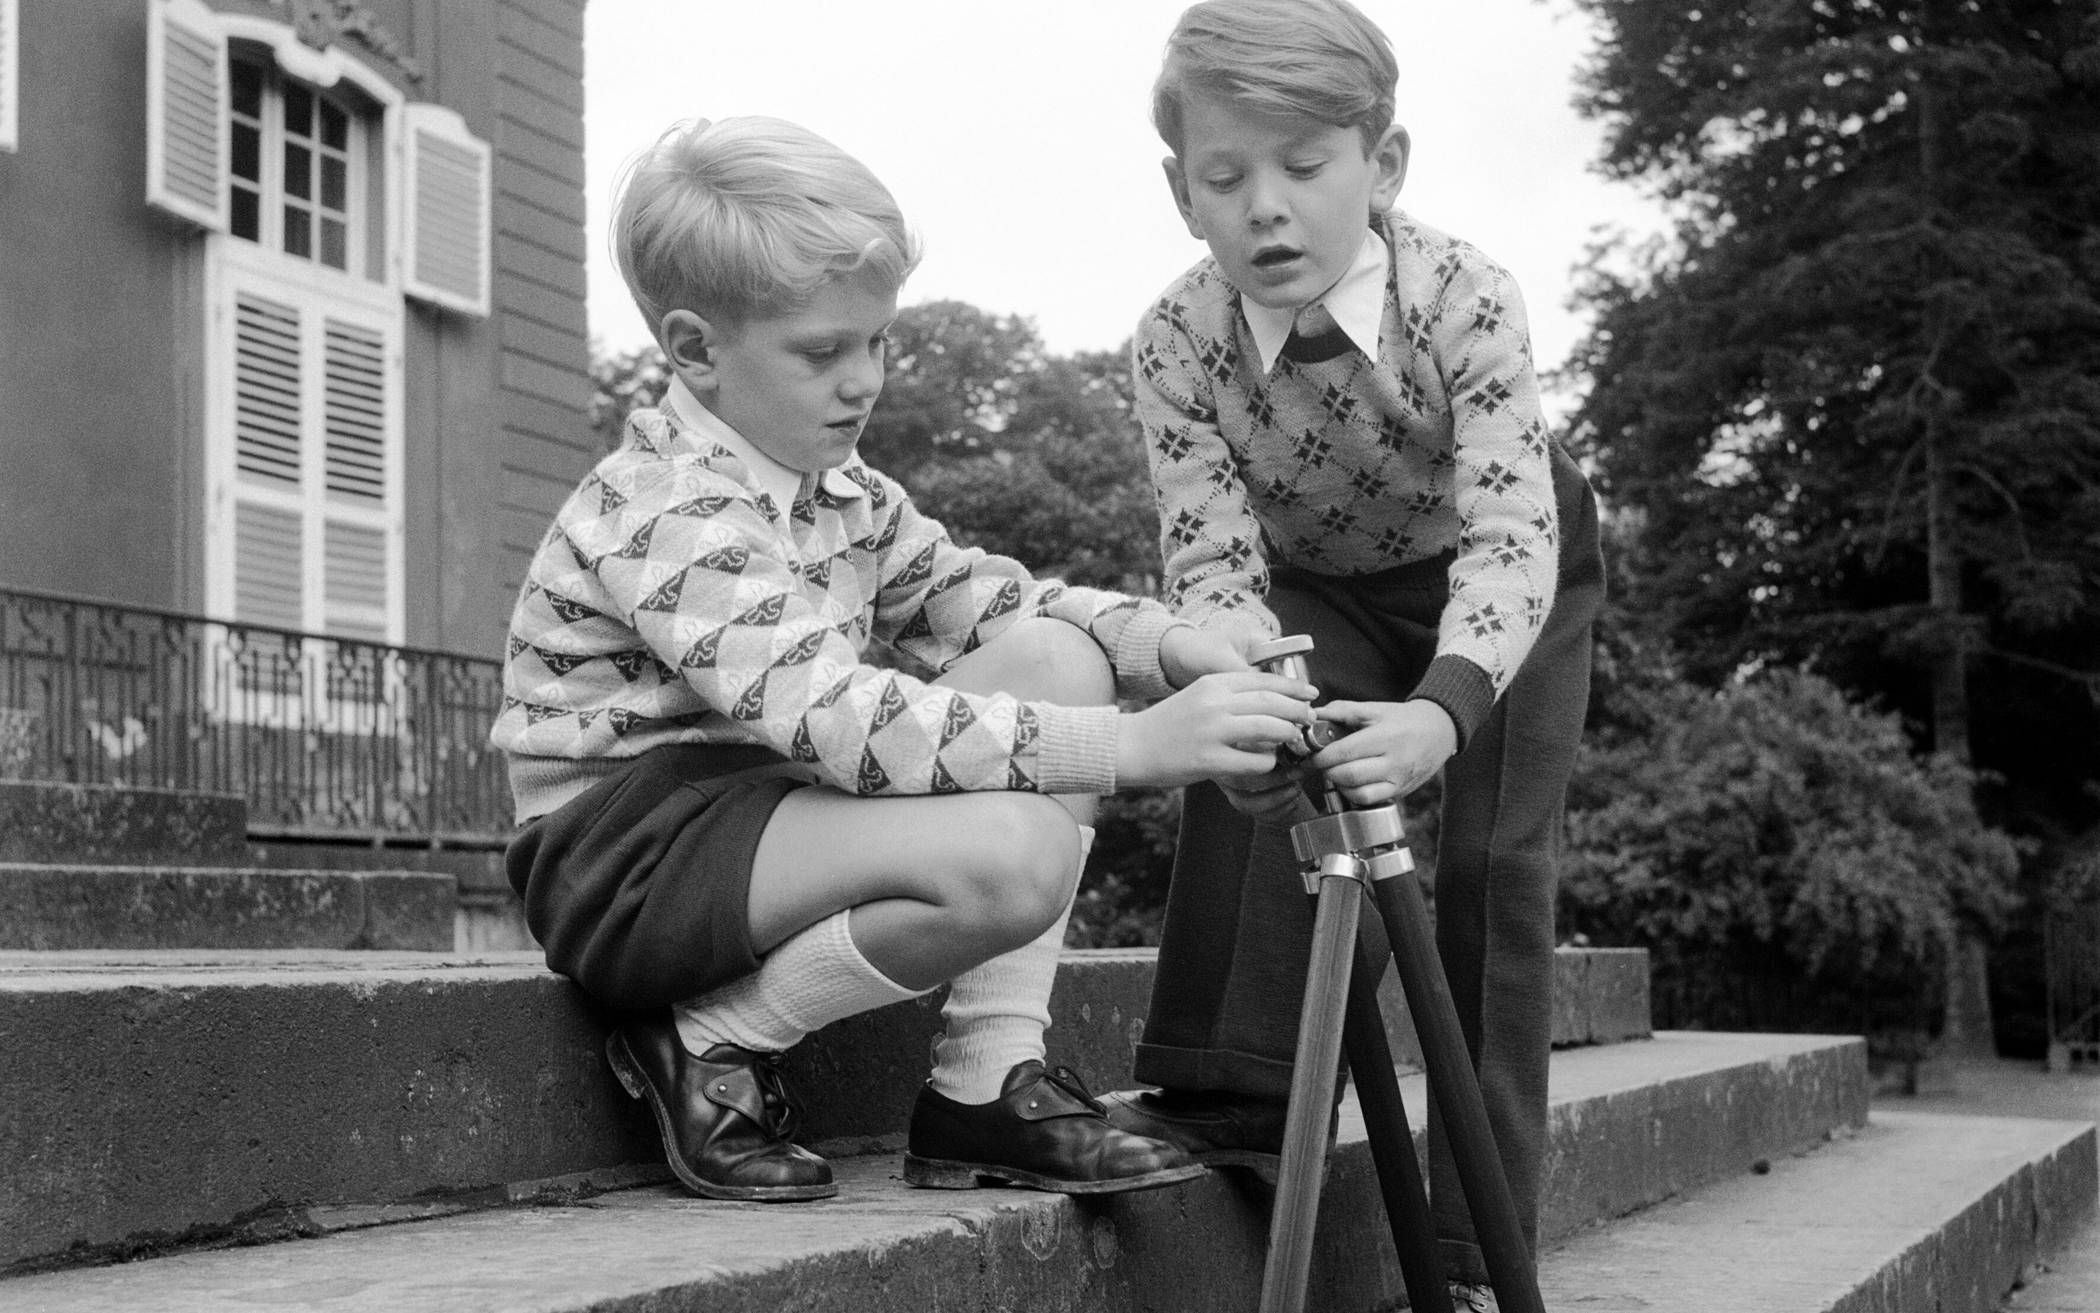  Zwei Jungs vorm Schloss, eine Aufnahme aus dem Jahr 1953. 